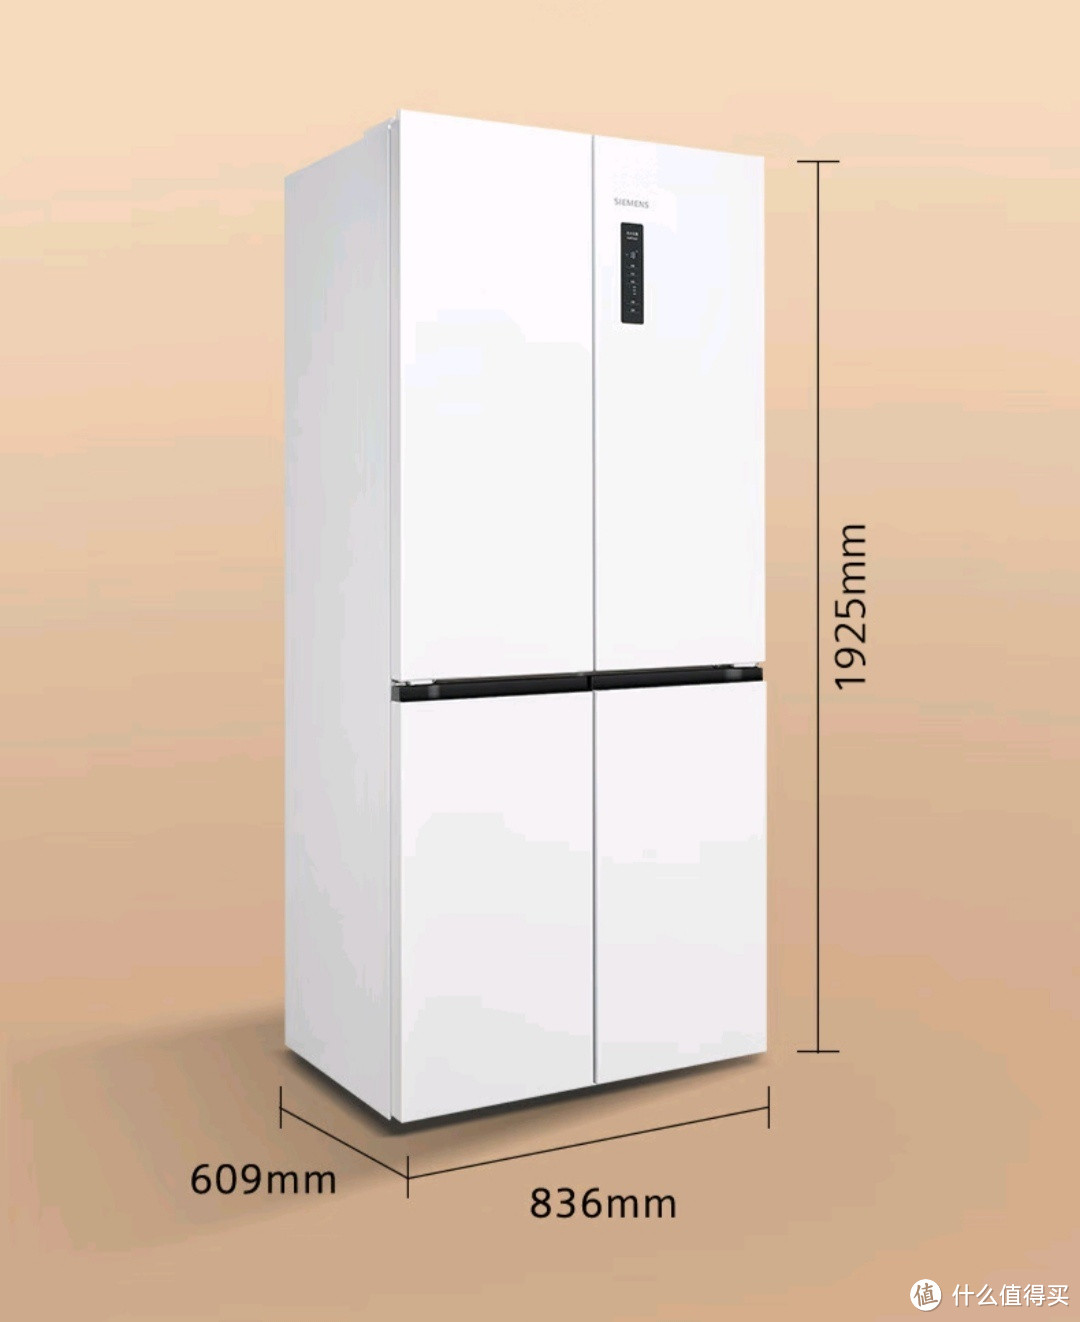 高品质的冰箱就选西门子十字星系列冰箱KC502080EC